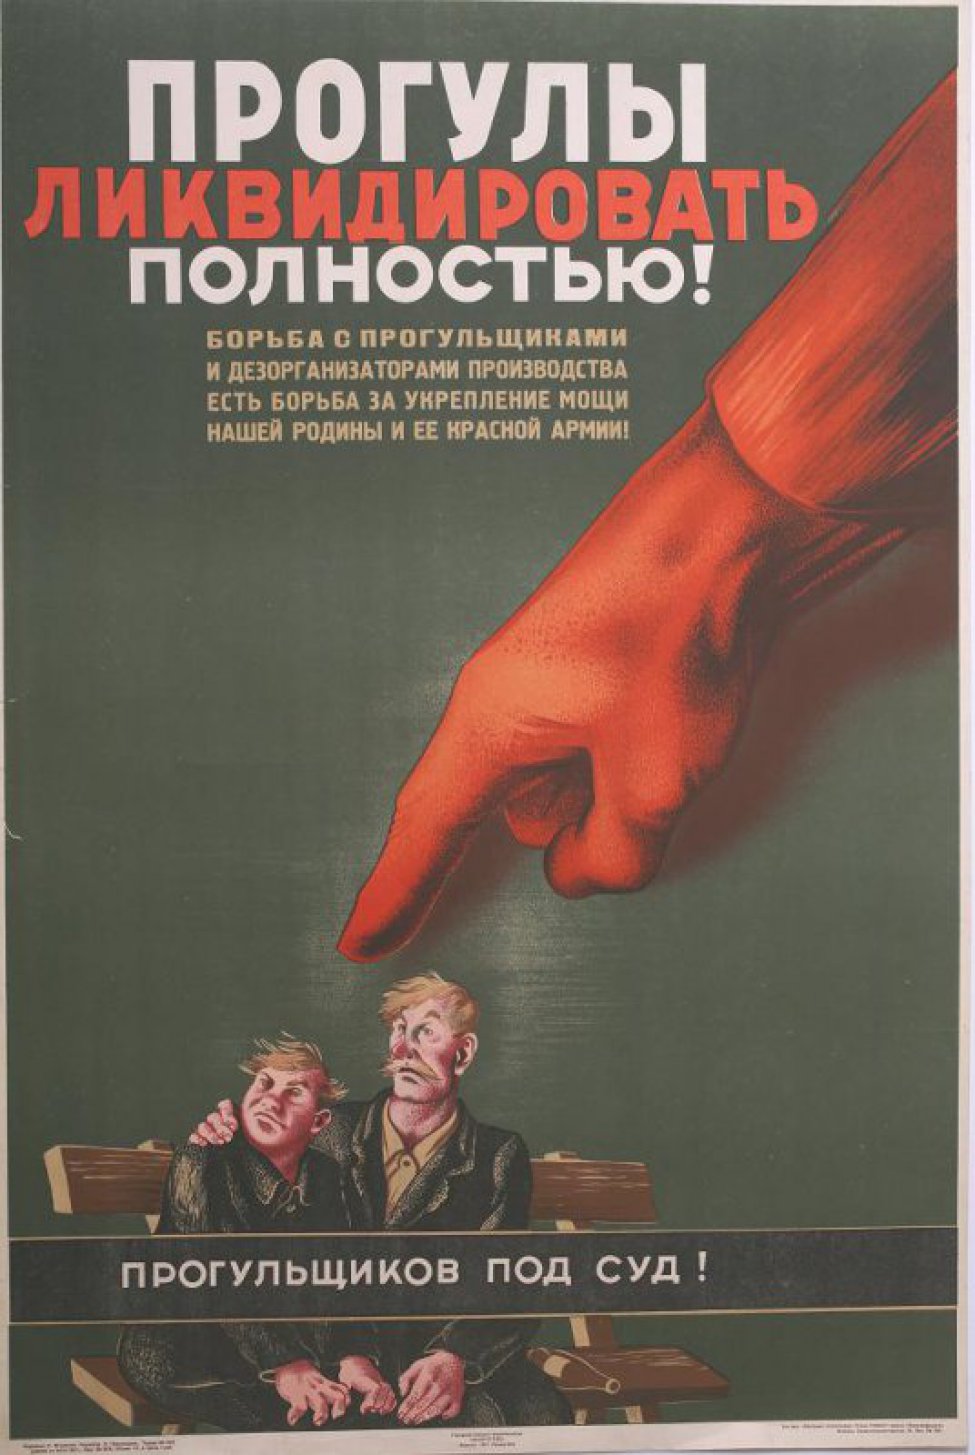 Изображена большая красная рука  с вытянутым пальцем, показывающая на двух сидящих  на скамье подсудимых прогульщиков.